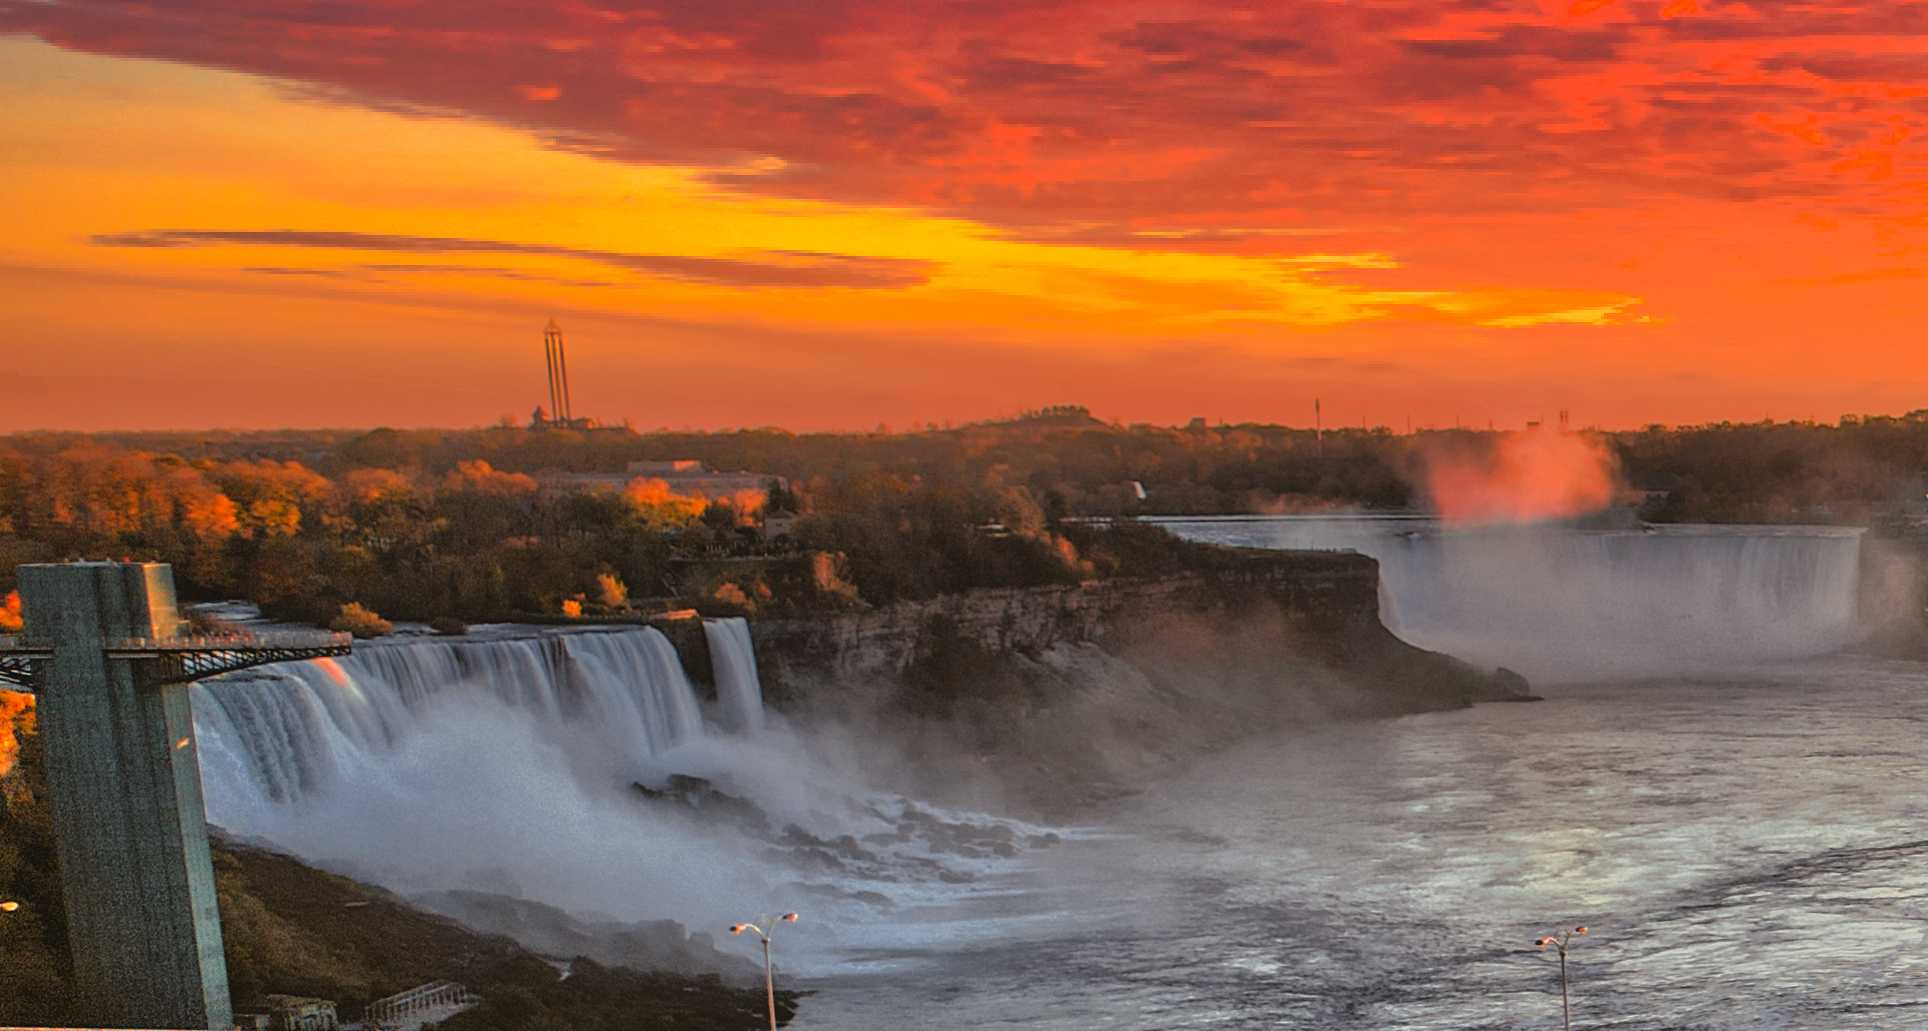 File:Niagara Falls Sunset (cropped).jpg - Wikimedia Commons